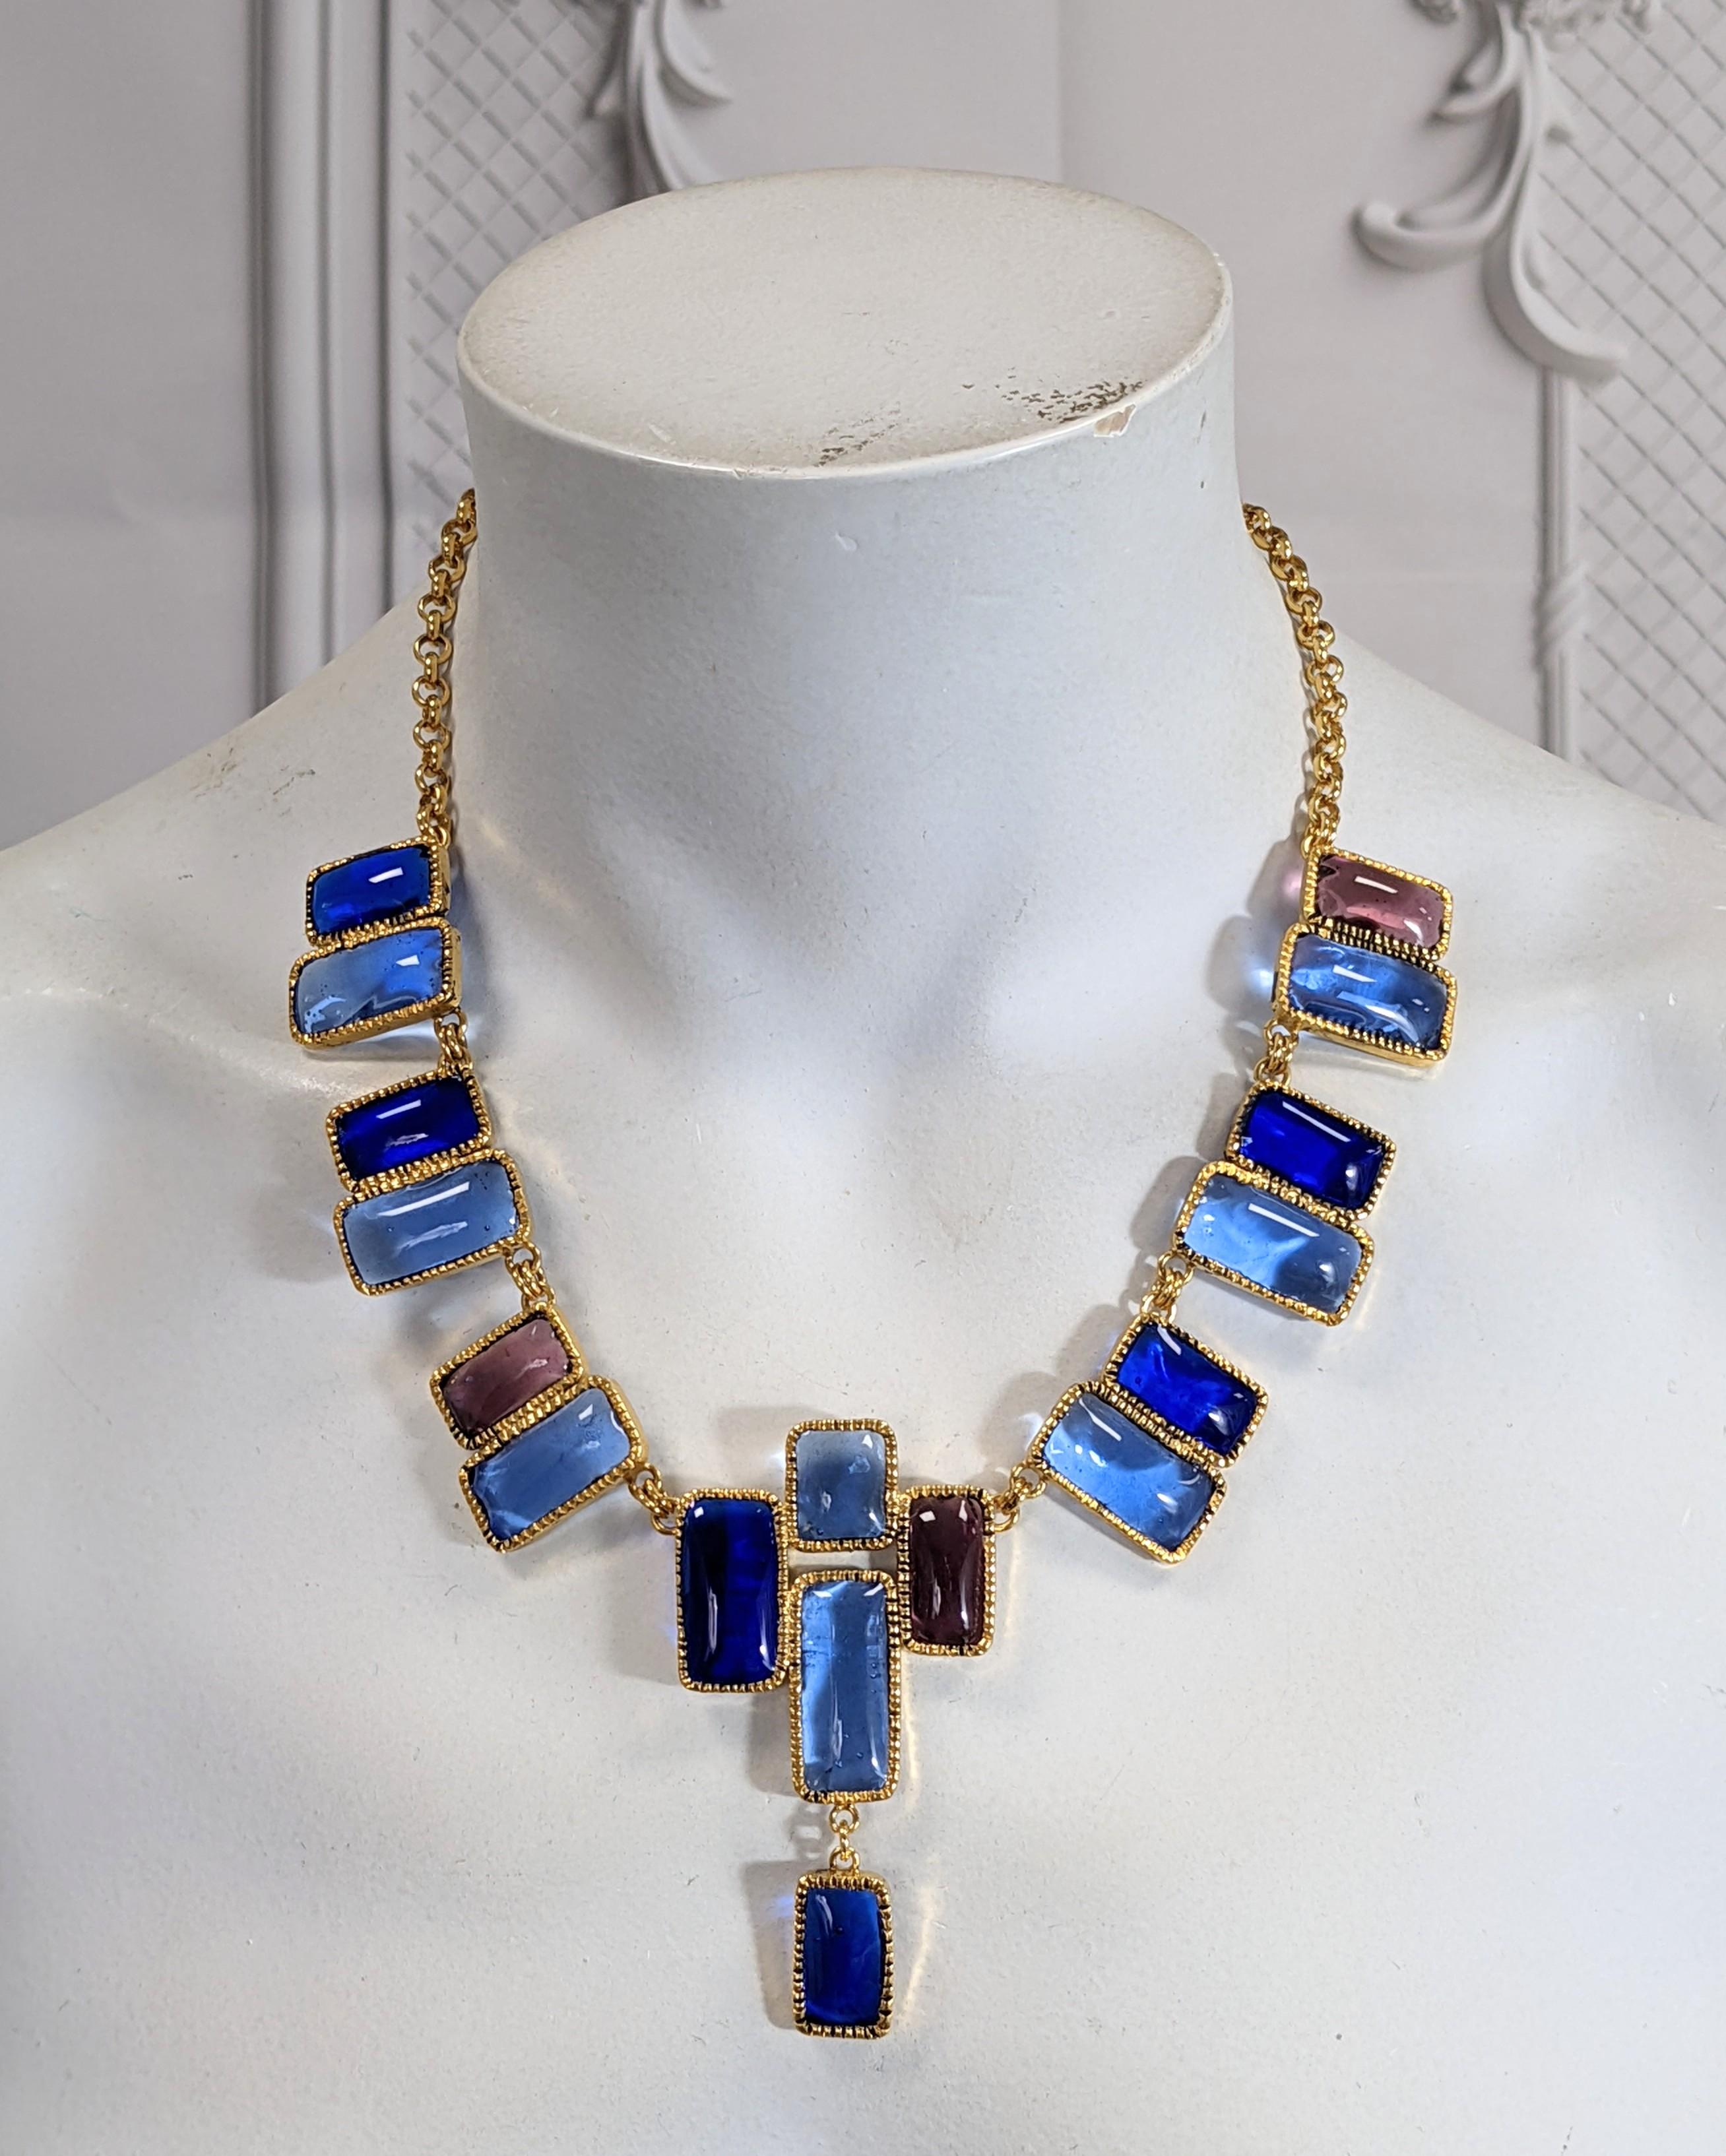 Yves Saint Laurent Mondrian Gripoix Glass Necklace For Sale 1